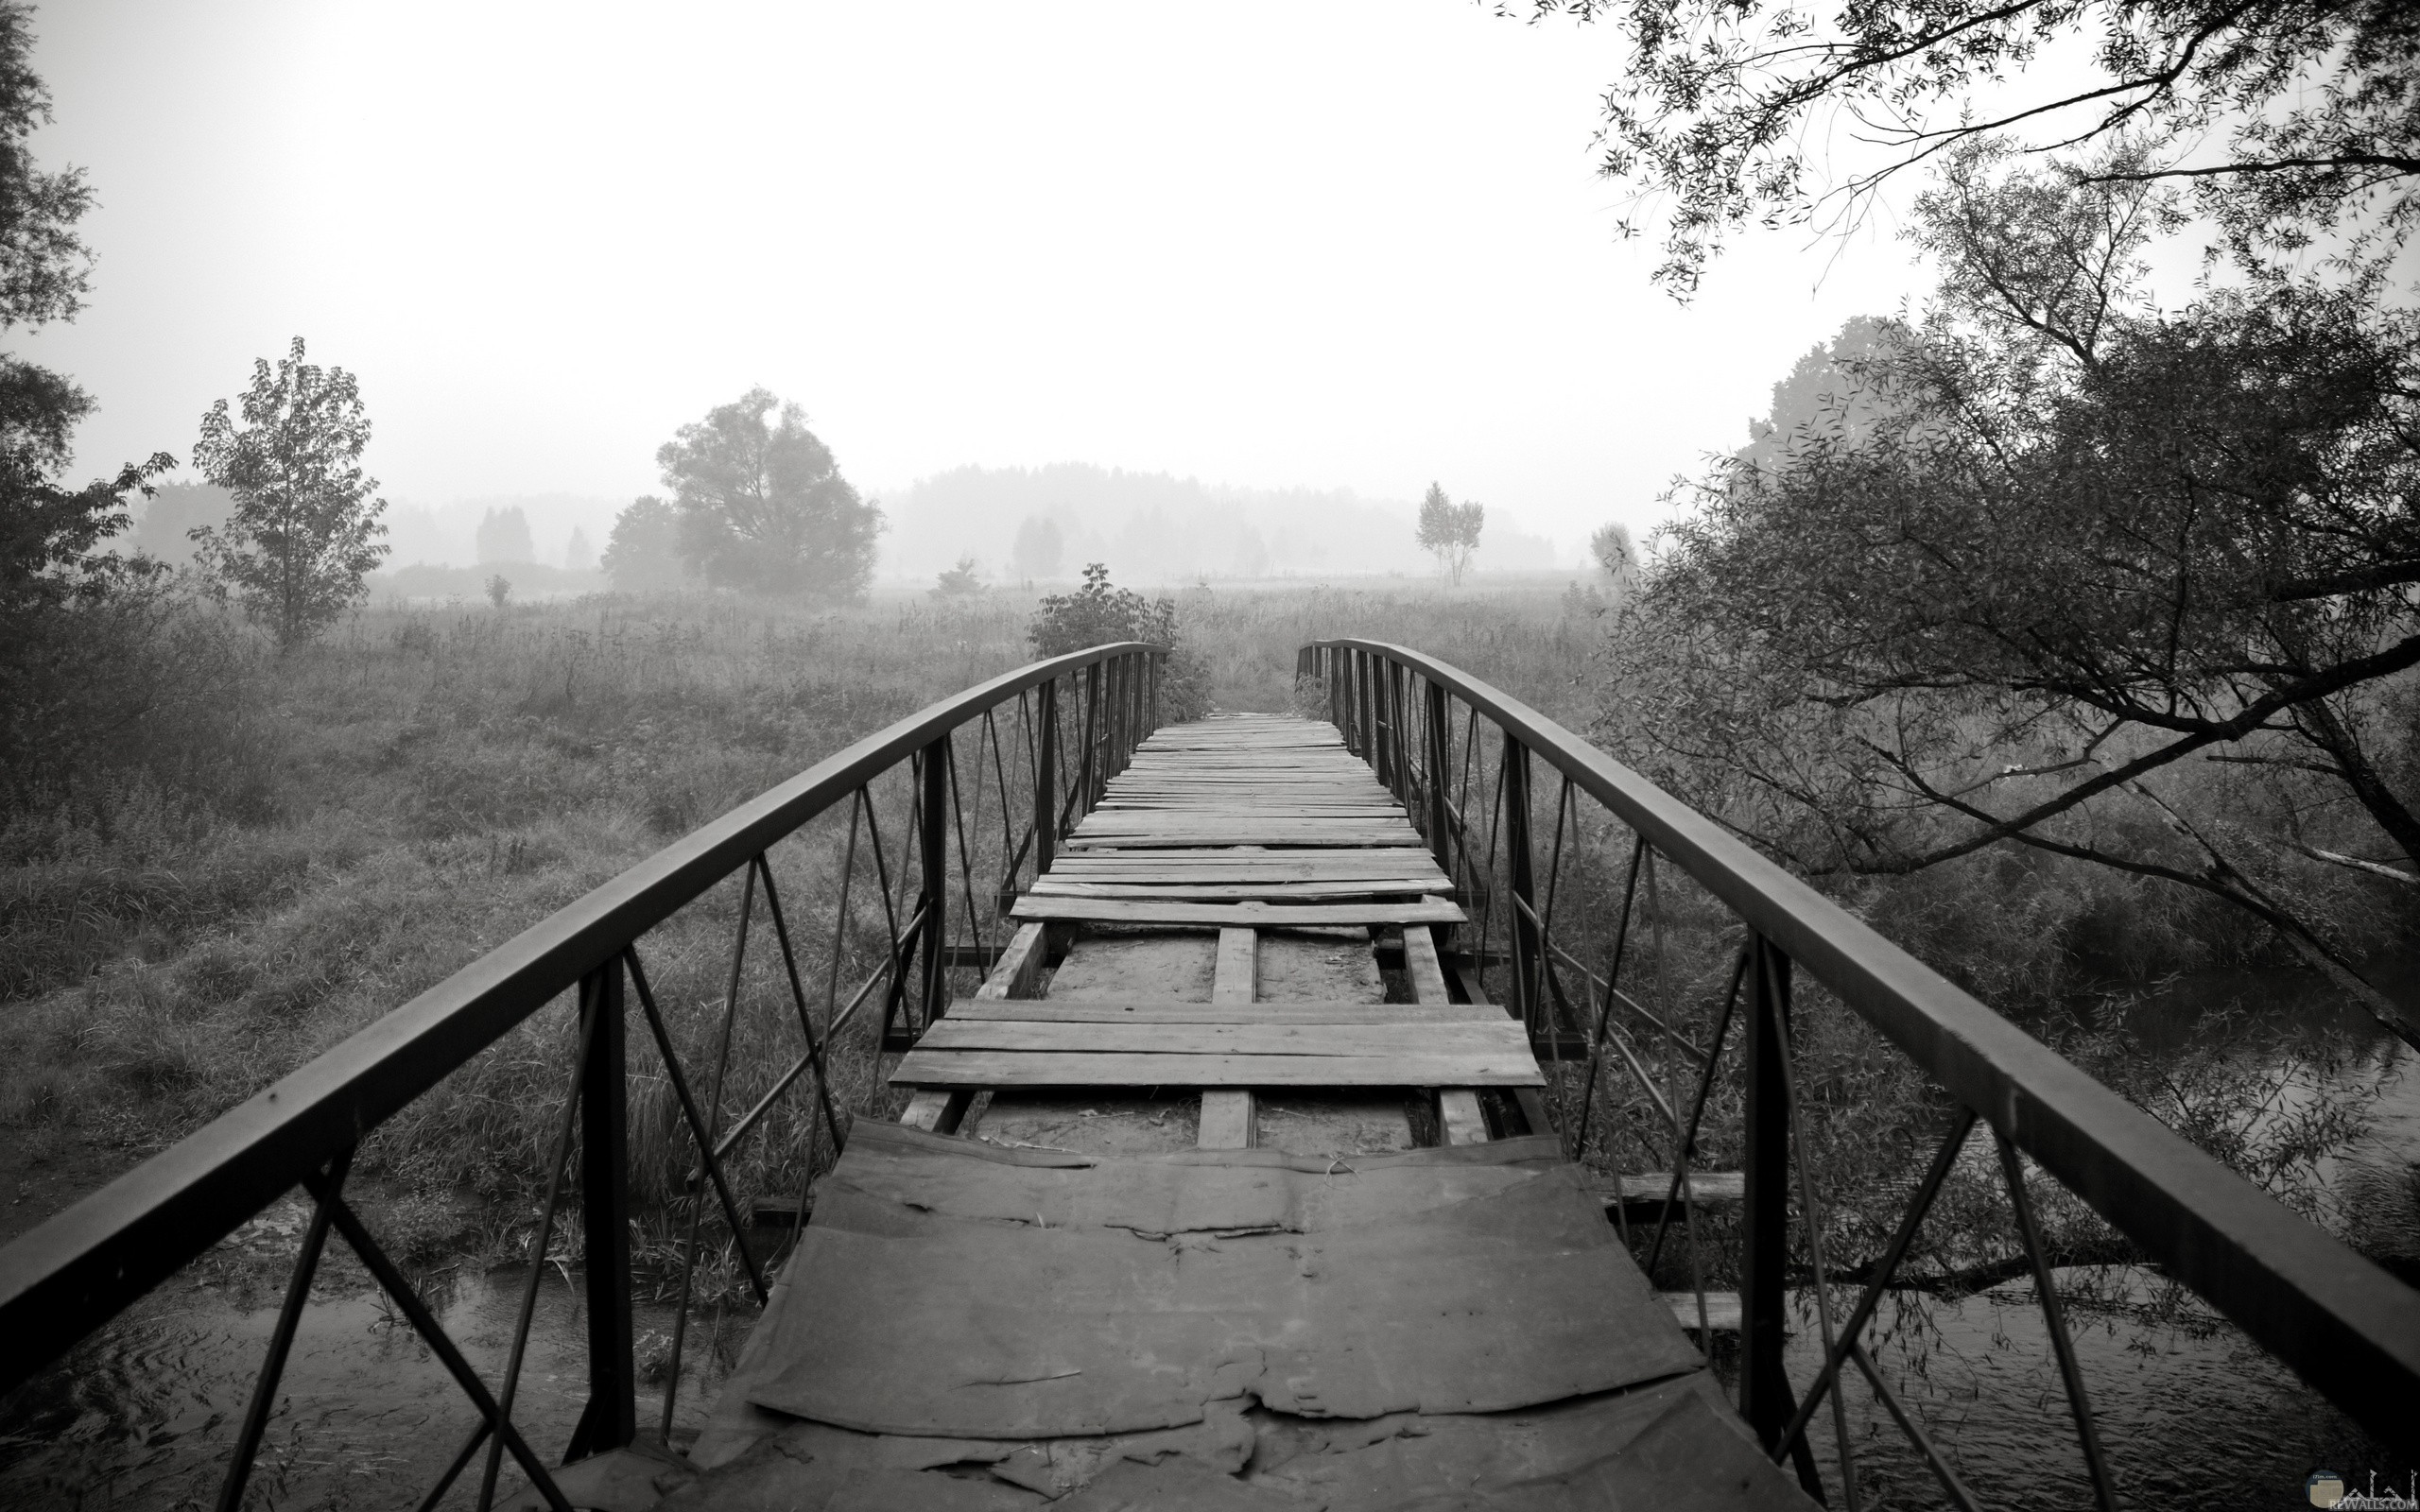 صورة حزينة لمنظر جسر متهالك وقديم